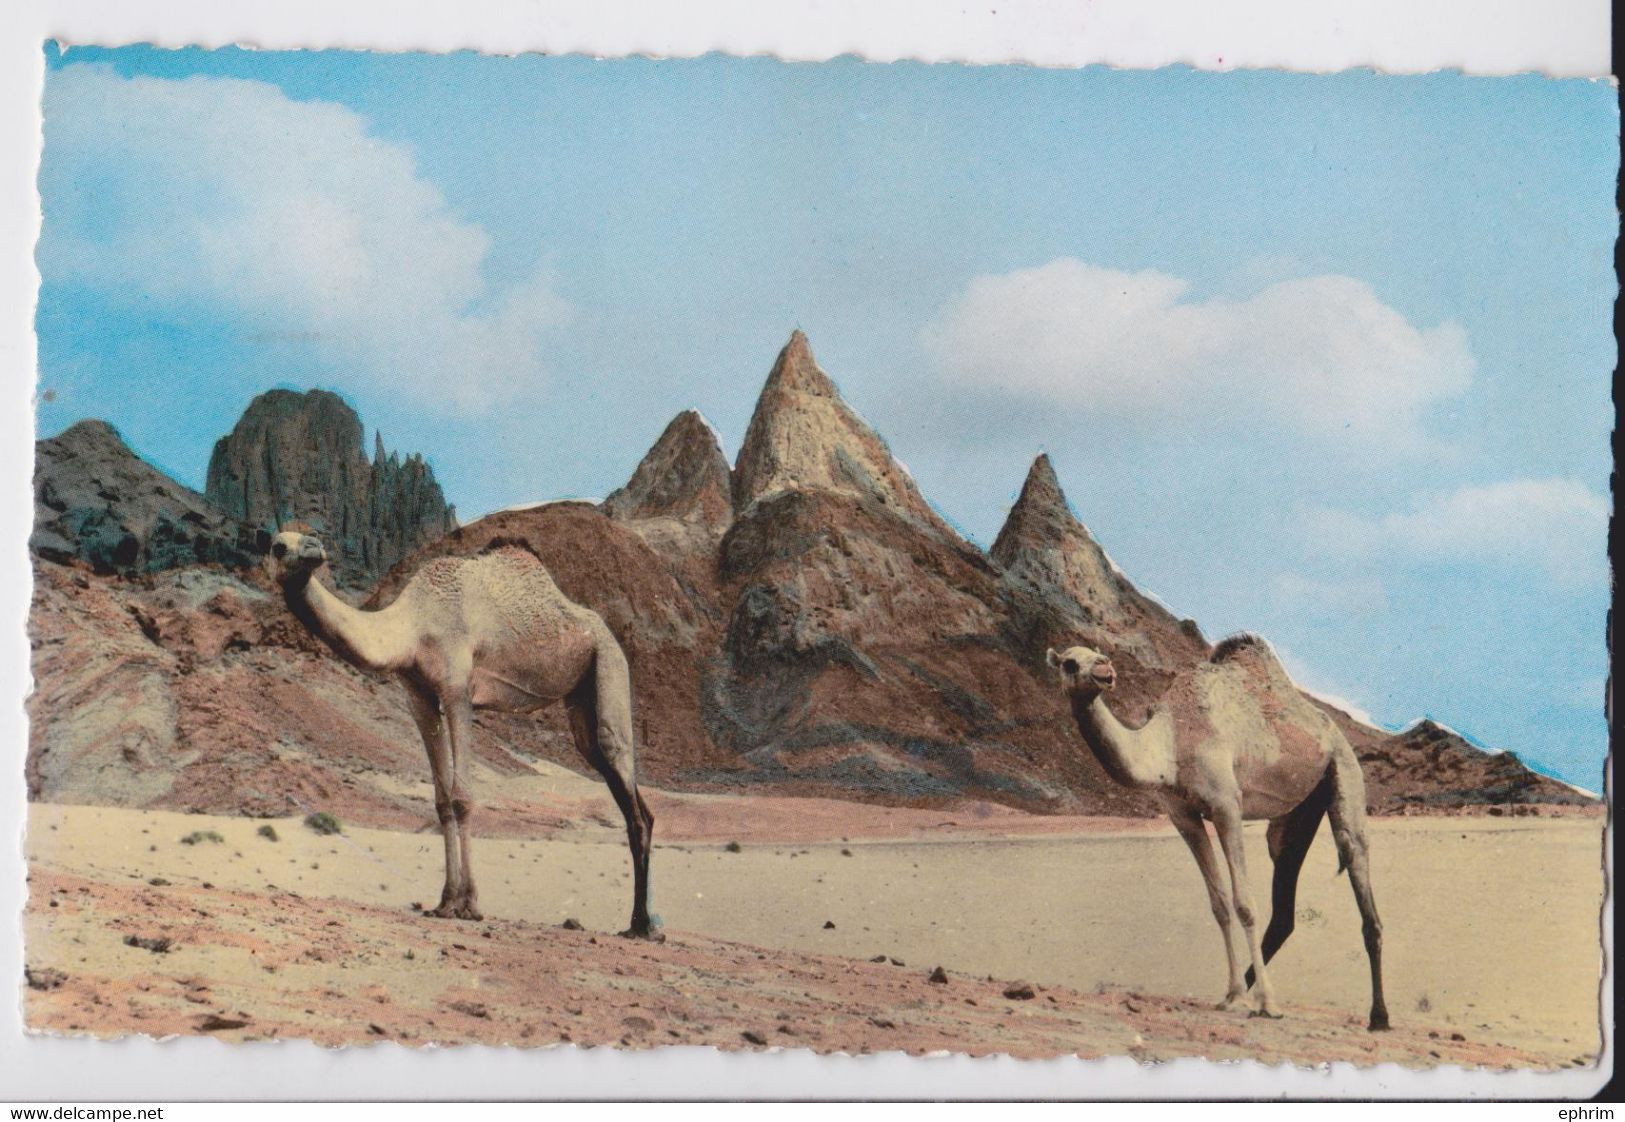 Aden Federation Of South Arabia Carte Postale Chameau Affranchissement Timbre Stamp Franking Postcard Camel 1965 - Jemen